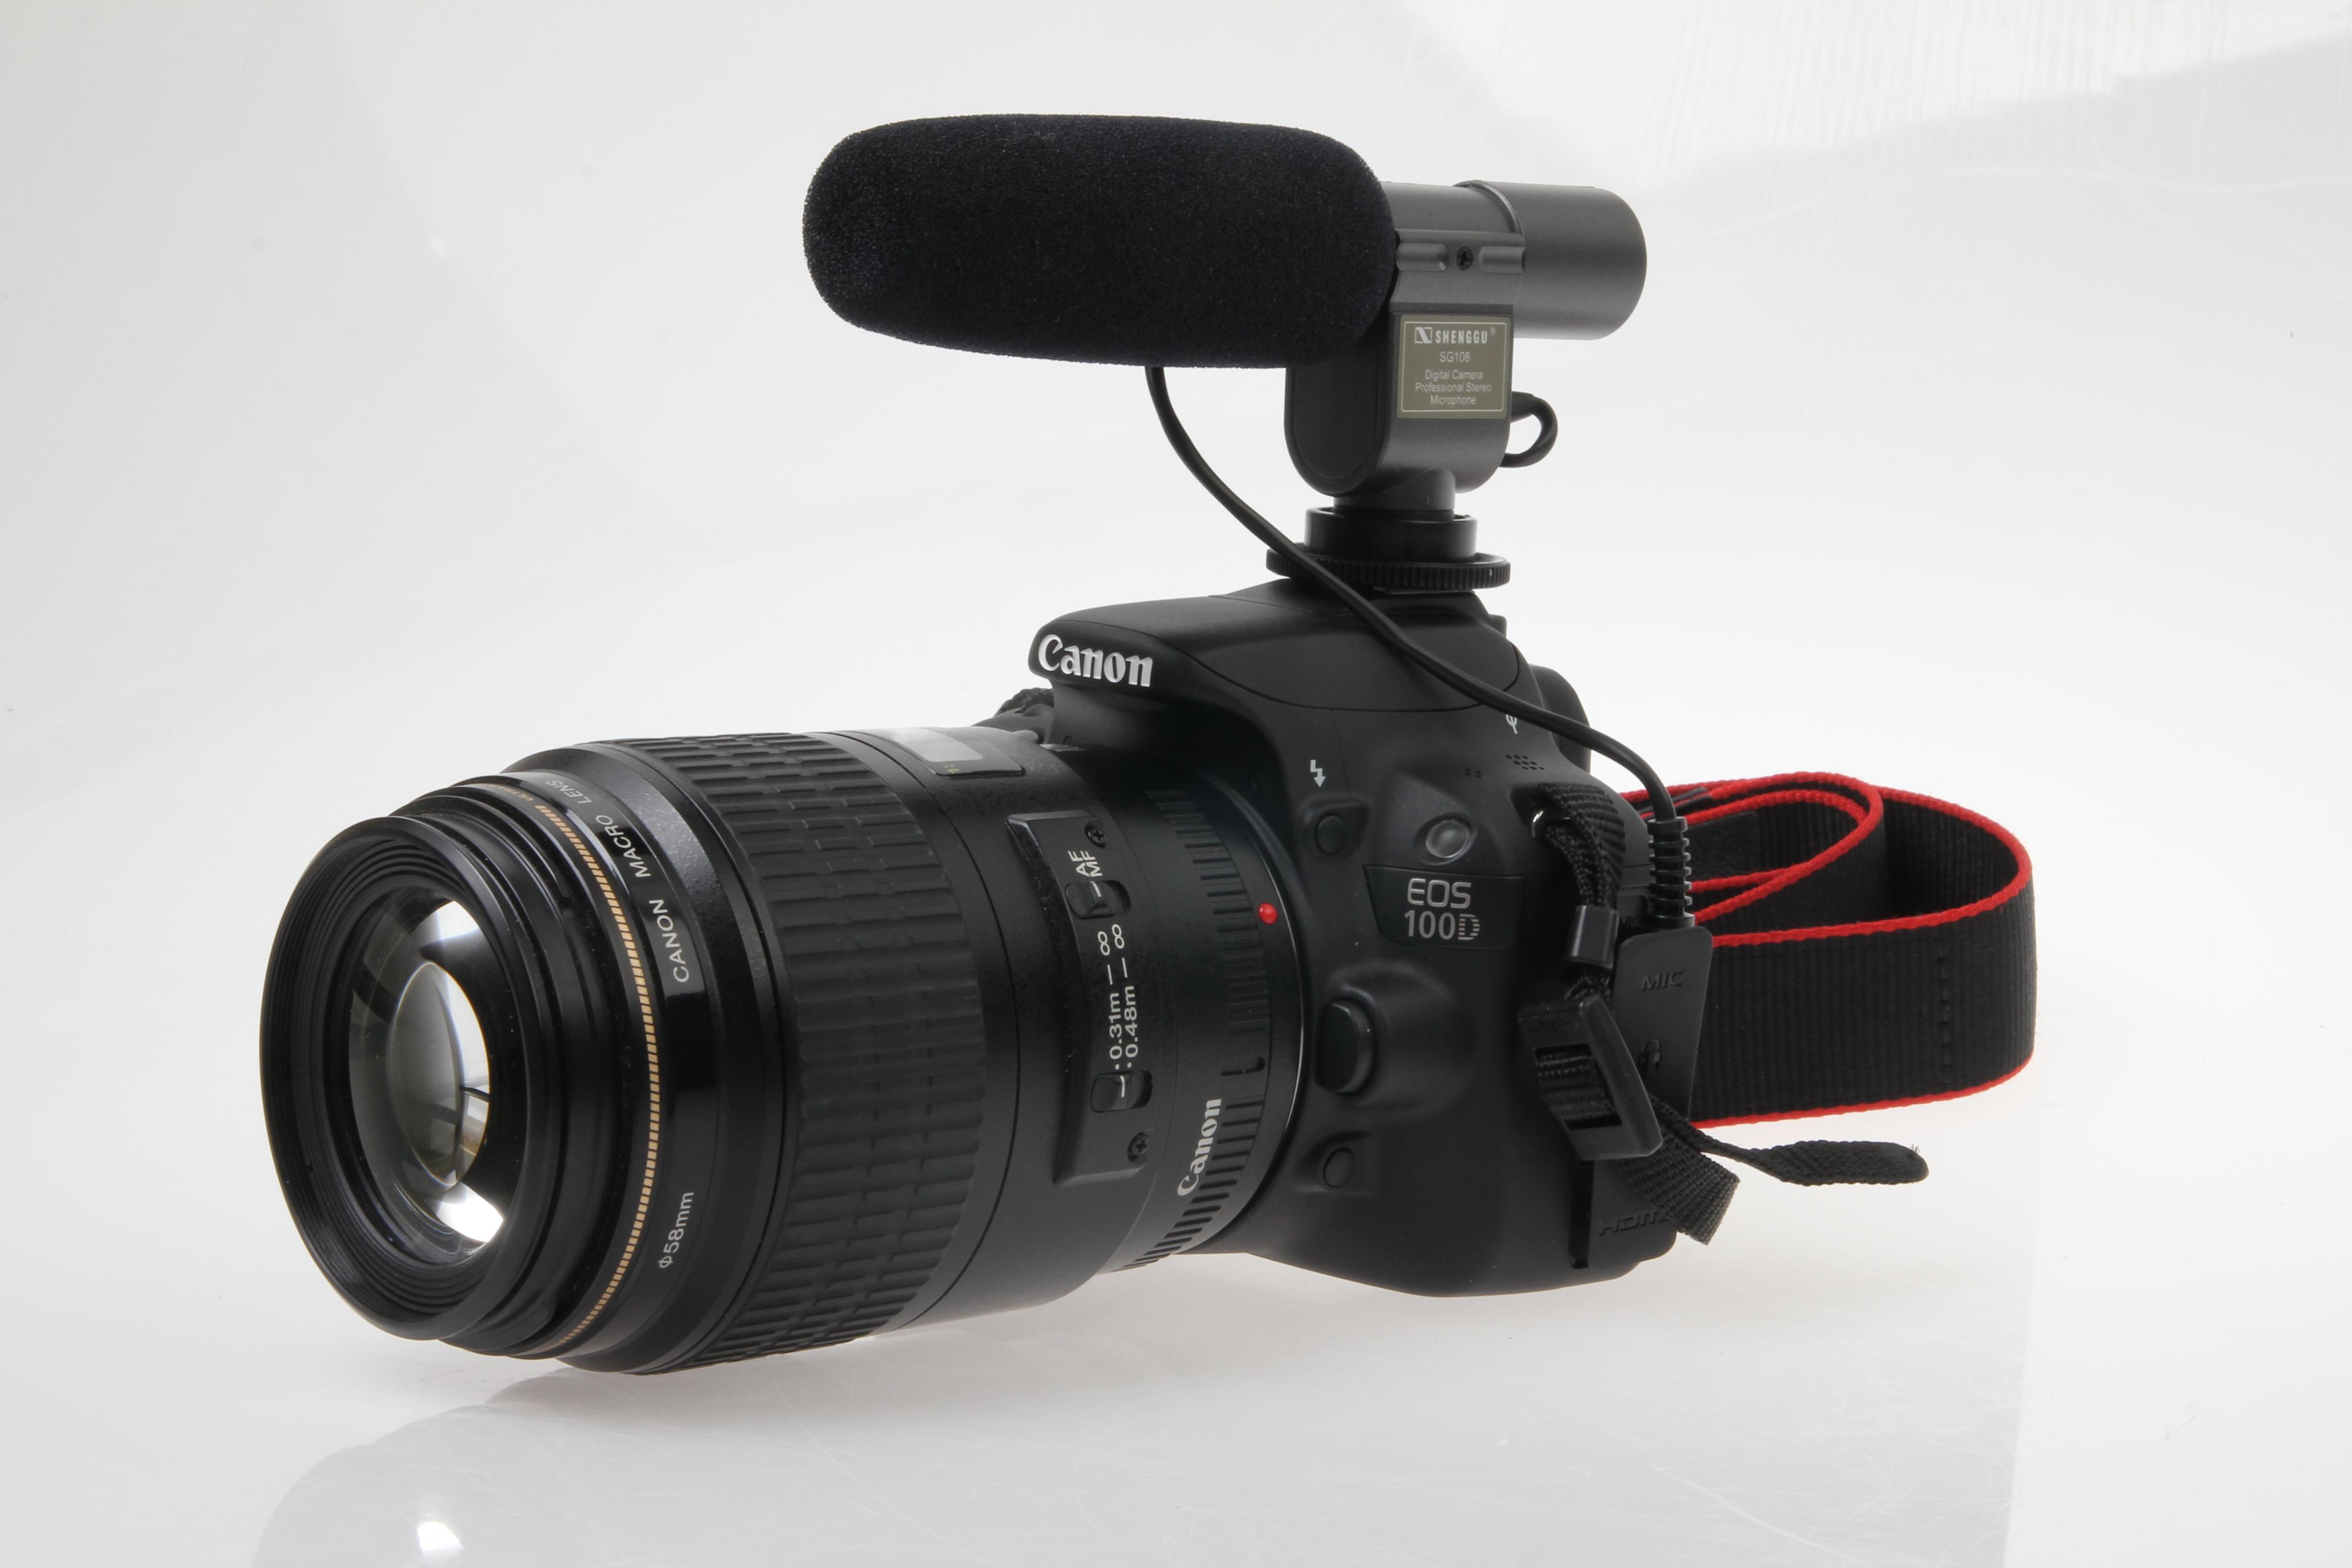 Canon 100Ds store opptikkpark gir tilgang til mange muligheter ved video.Foto: Paal Mork-Knutsen, Akam.no